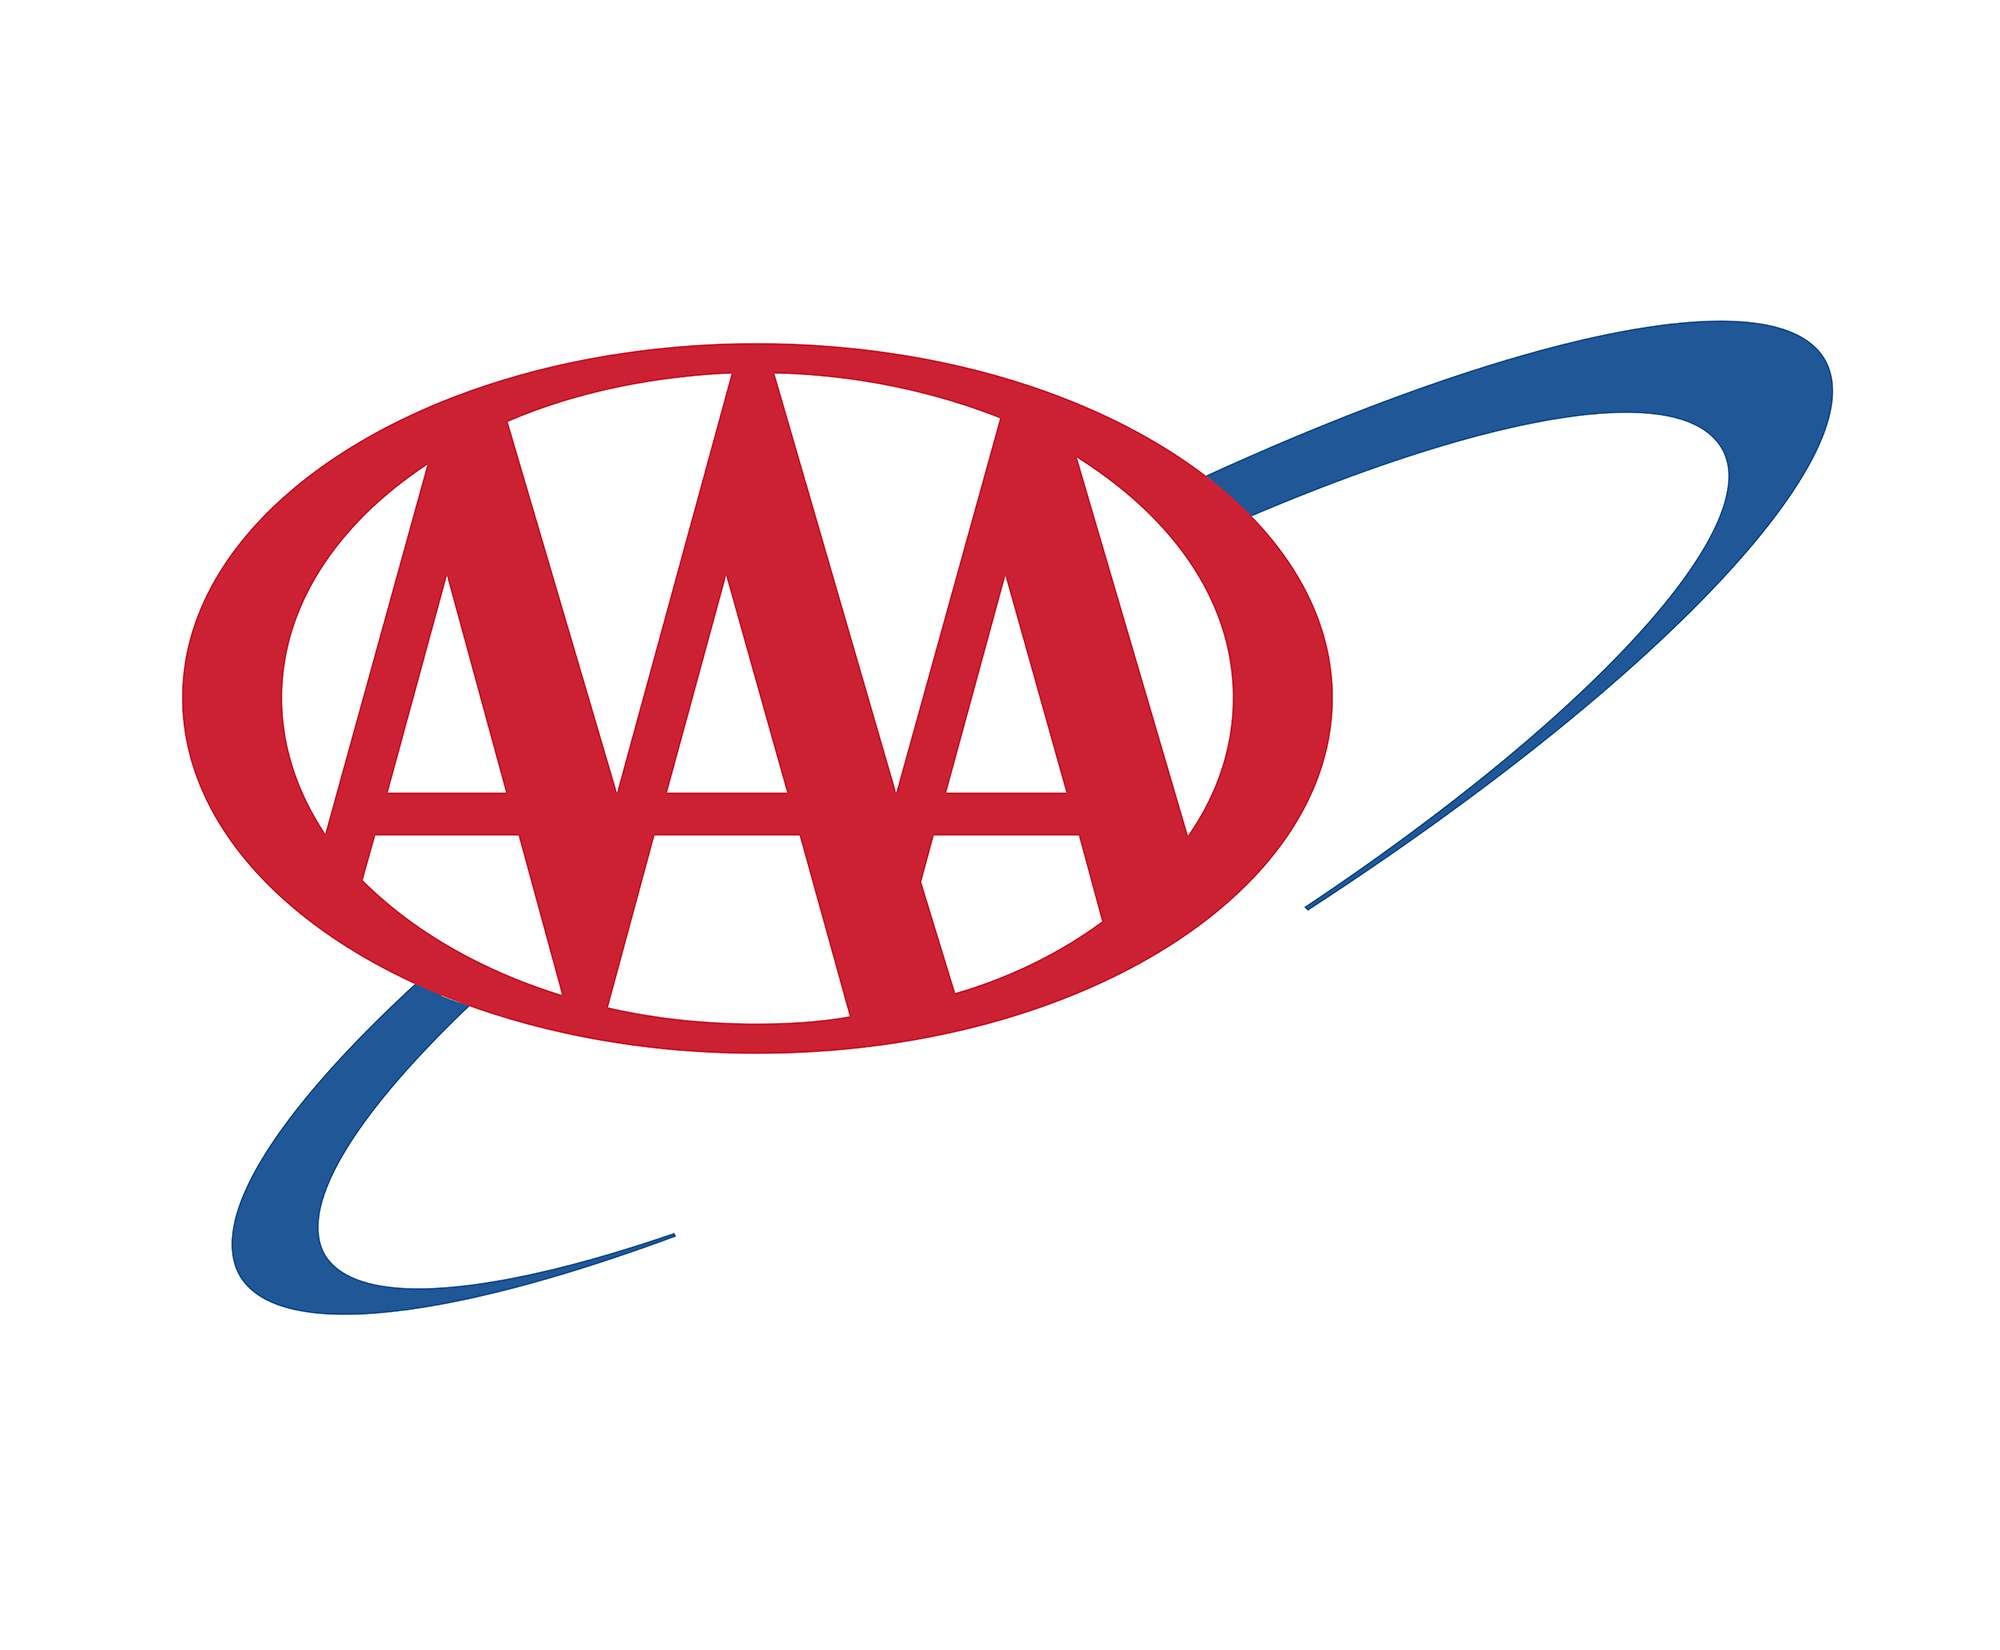 AAA_logo_3.jpg